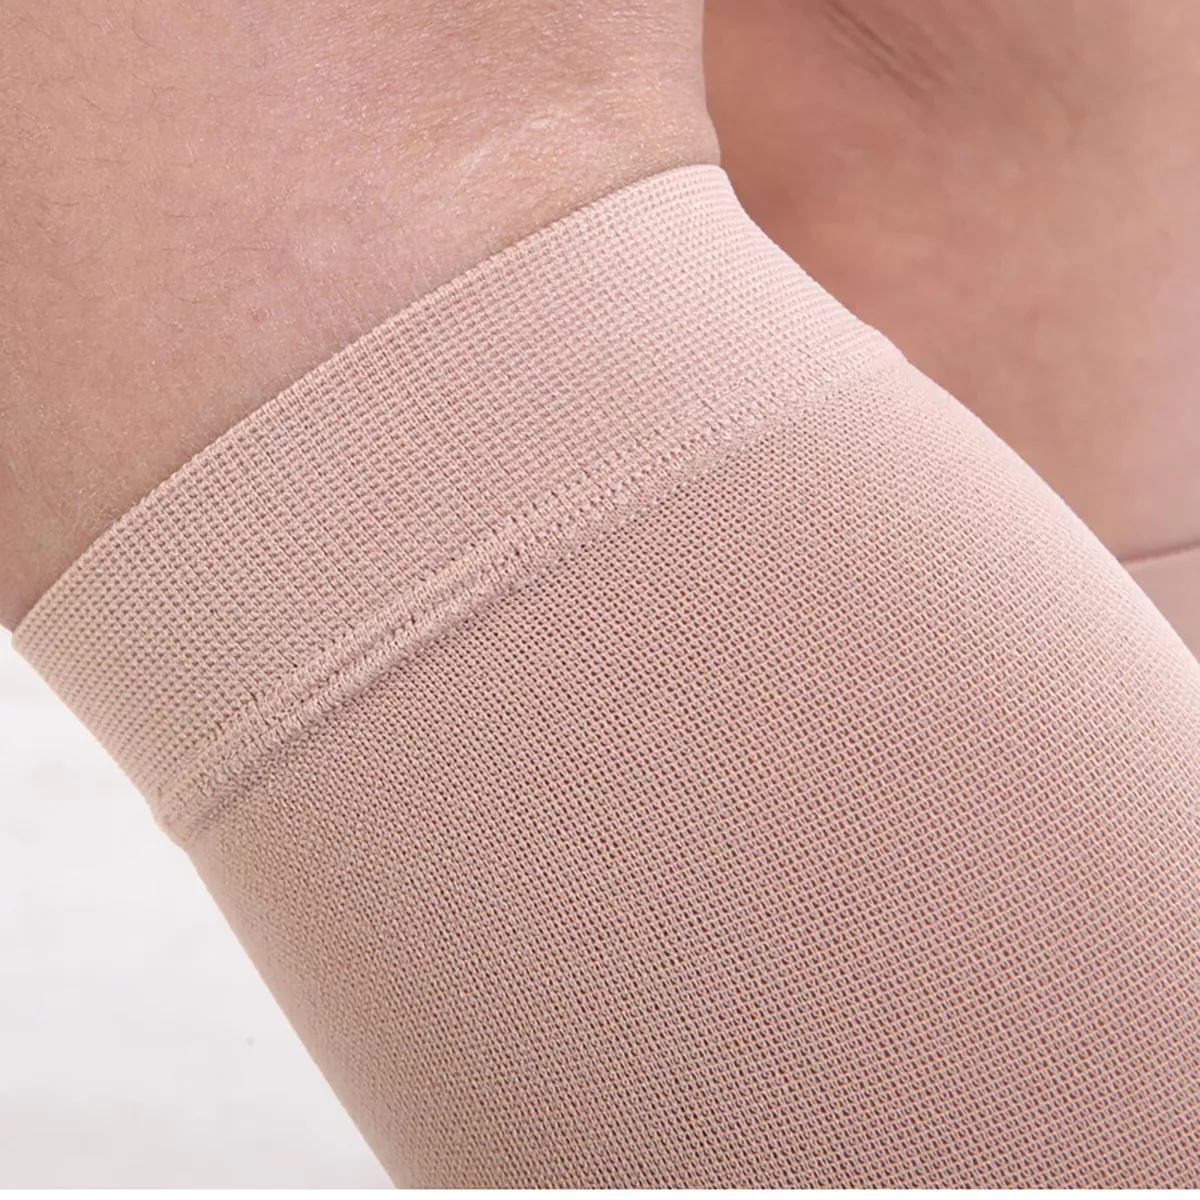 Varcoh ® 15-20 mmHg Men Calf Sleeve Compression Socks Beige